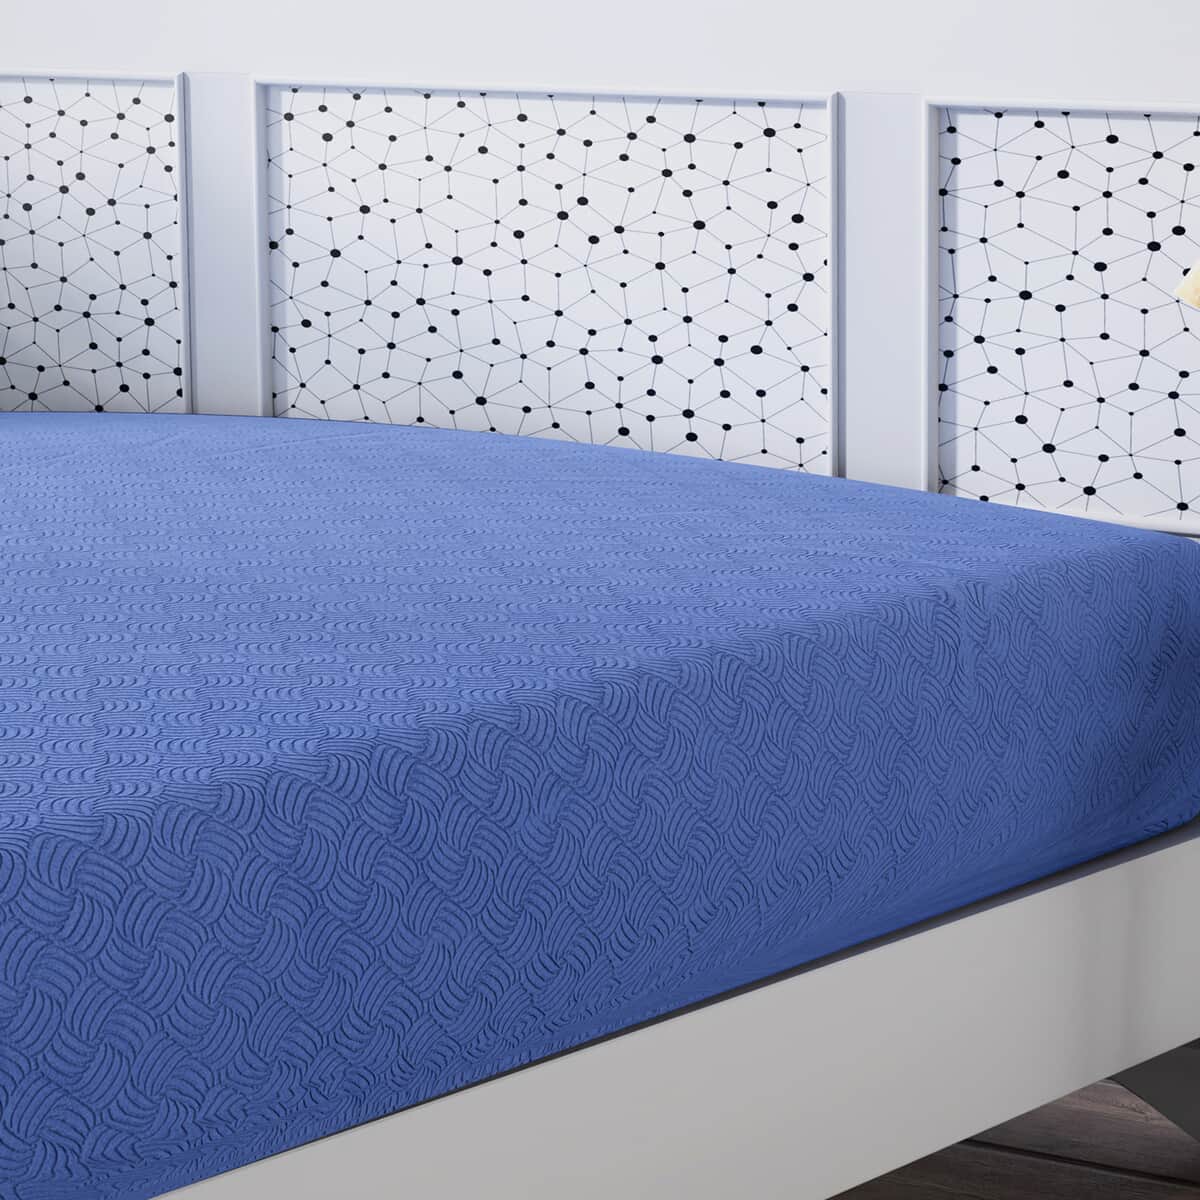 Homesmart Blue Solid Embossed 6 pcs Microfiber Sheet Set - King, Bed Sheets, Fitted Sheet, Bed Sheet Set, Microfiber Sheets image number 5